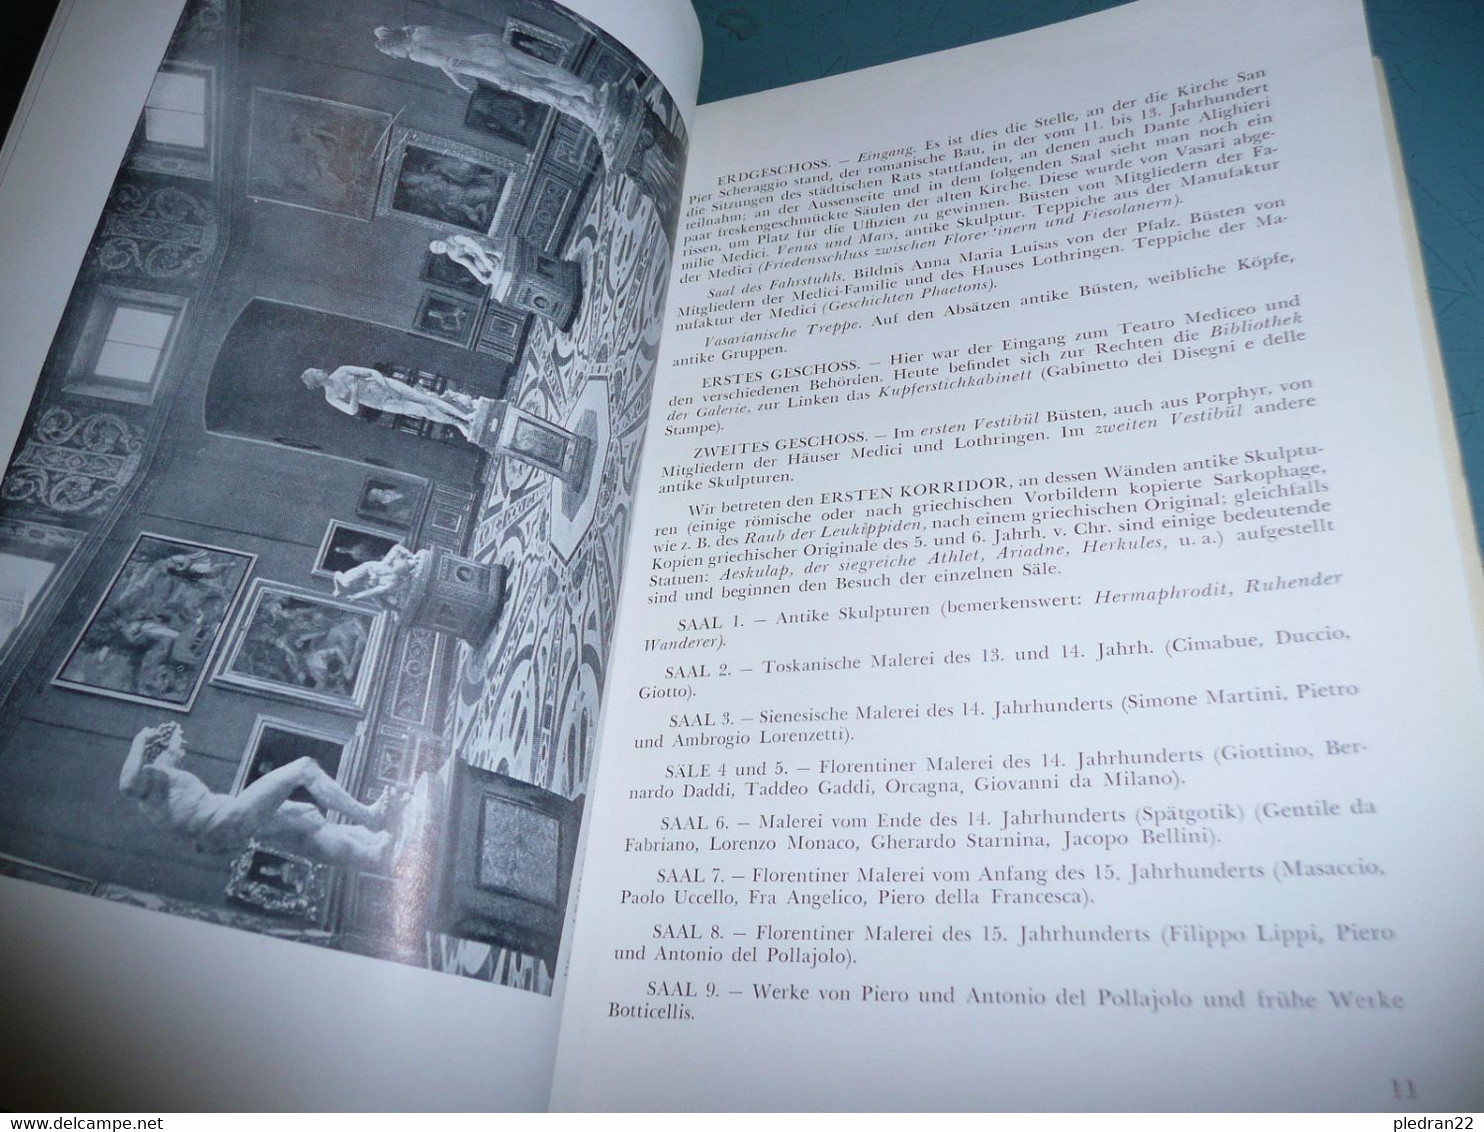 CESARE FASOLA DIE GALERIE DER UFFIZIEN IN FLORENZ GAKERIE DES OFFICES A FLORENCE ALBUM FÜHRER 1955 VERSION EN ALLEMAND - Schilderijen &  Beeldhouwkunst